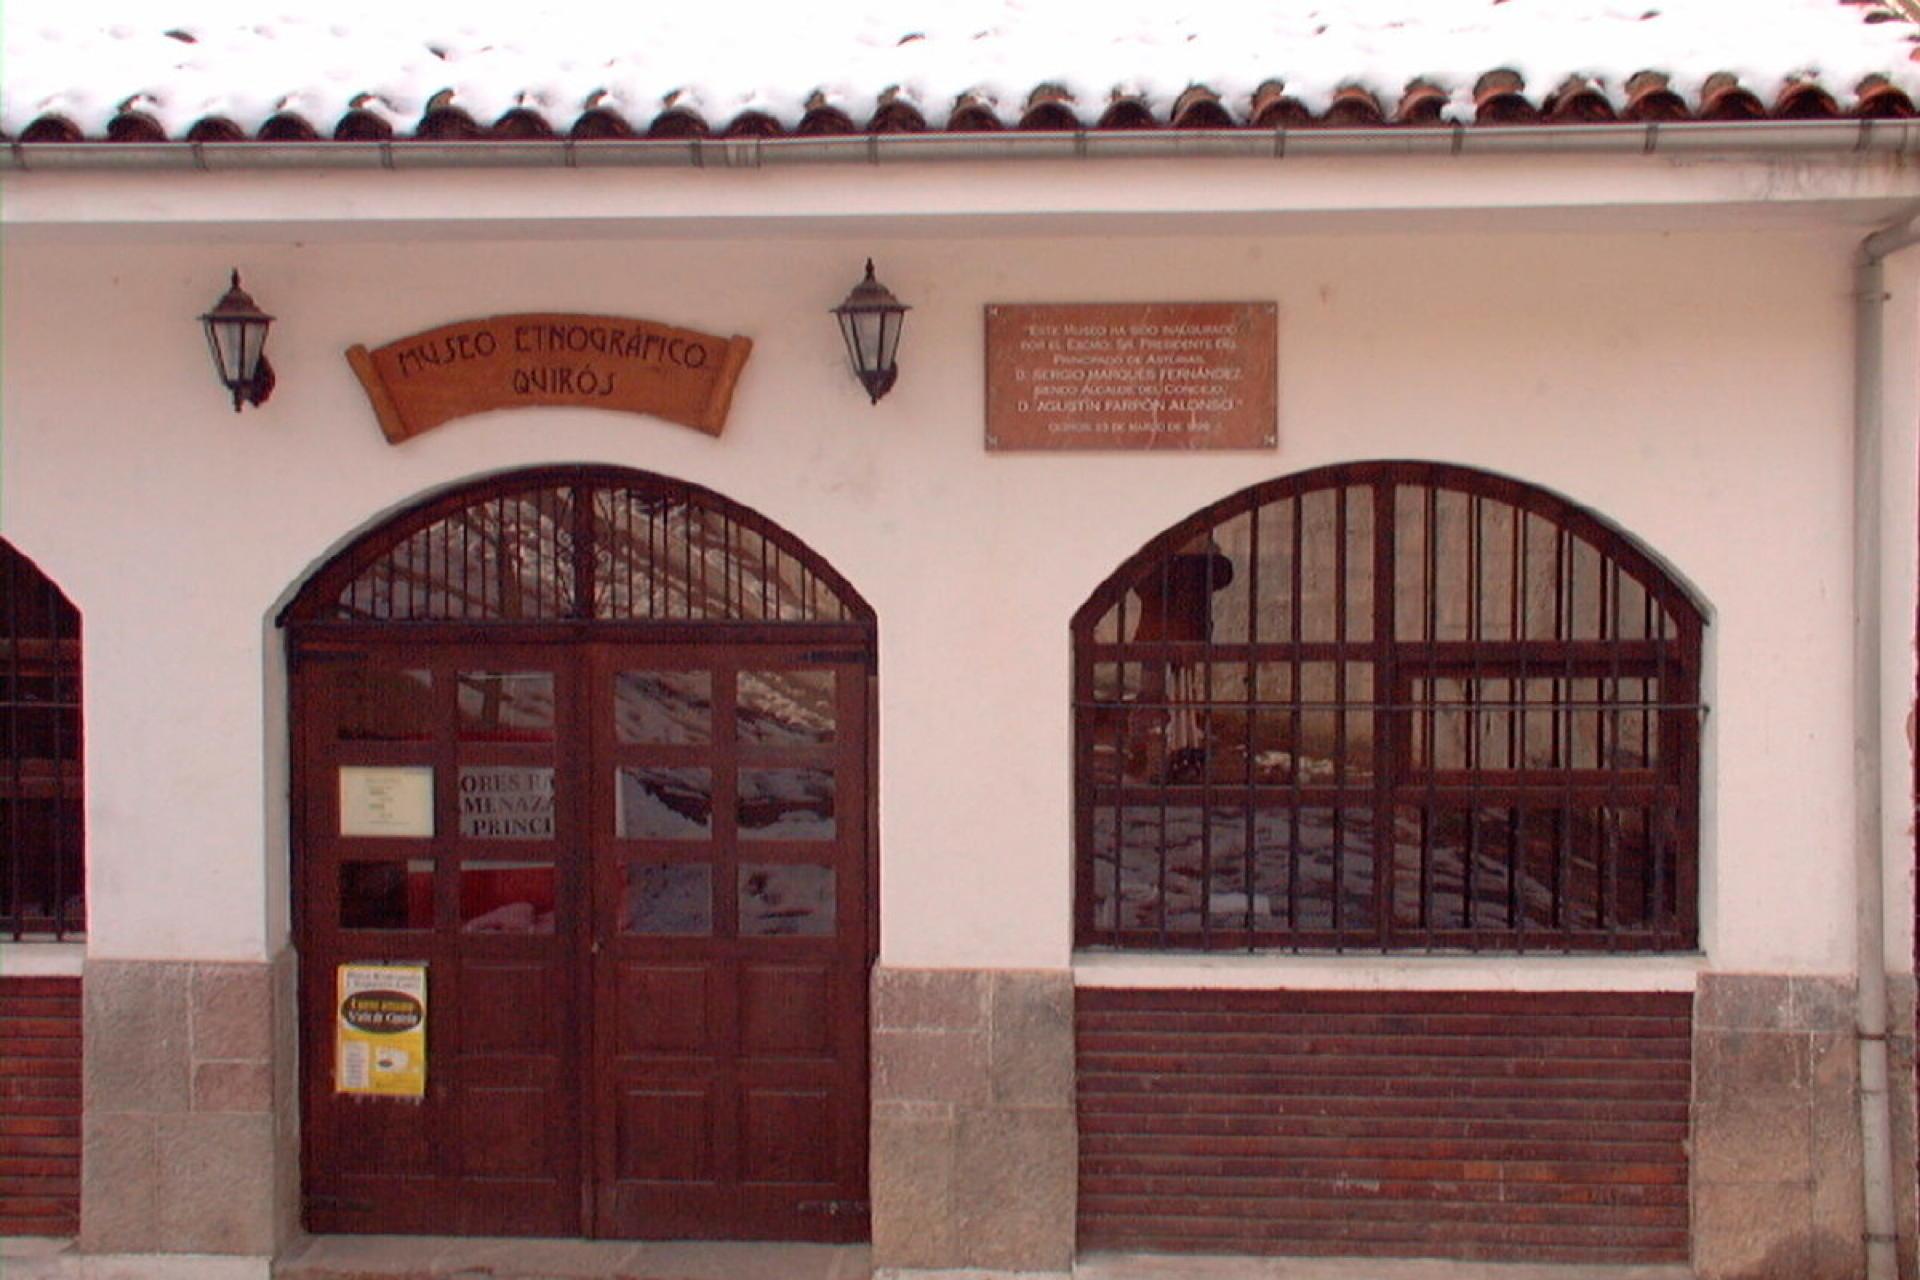 Museo Etnográfico de Quirós